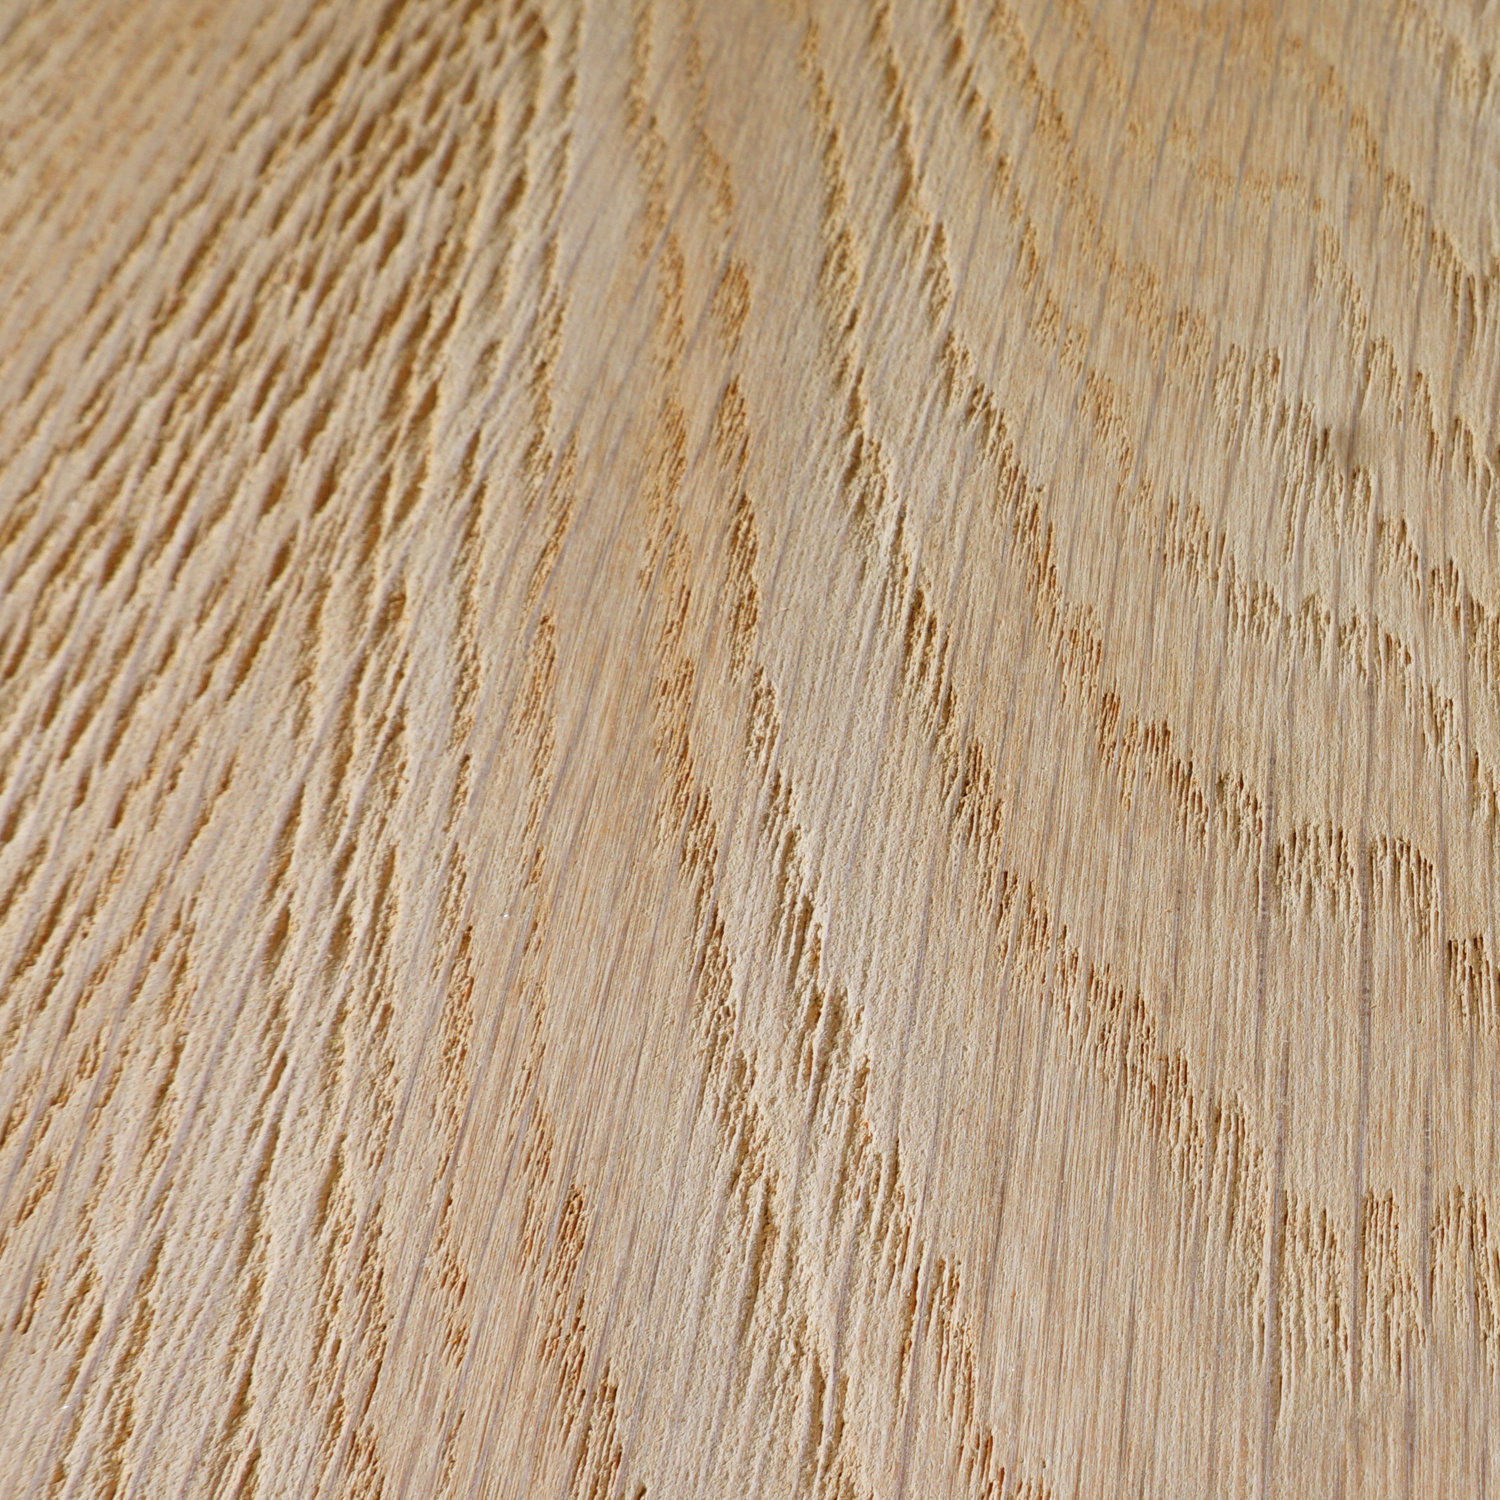  Leimholzplatte Eiche nach Maß - 3 cm dick - Eichenholz A-Qualität- Sandgestrahlt - Eiche Massivholzplatte - verleimt & künstlich getrocknet (HF 8-12%) - 15-120x20-260 cm